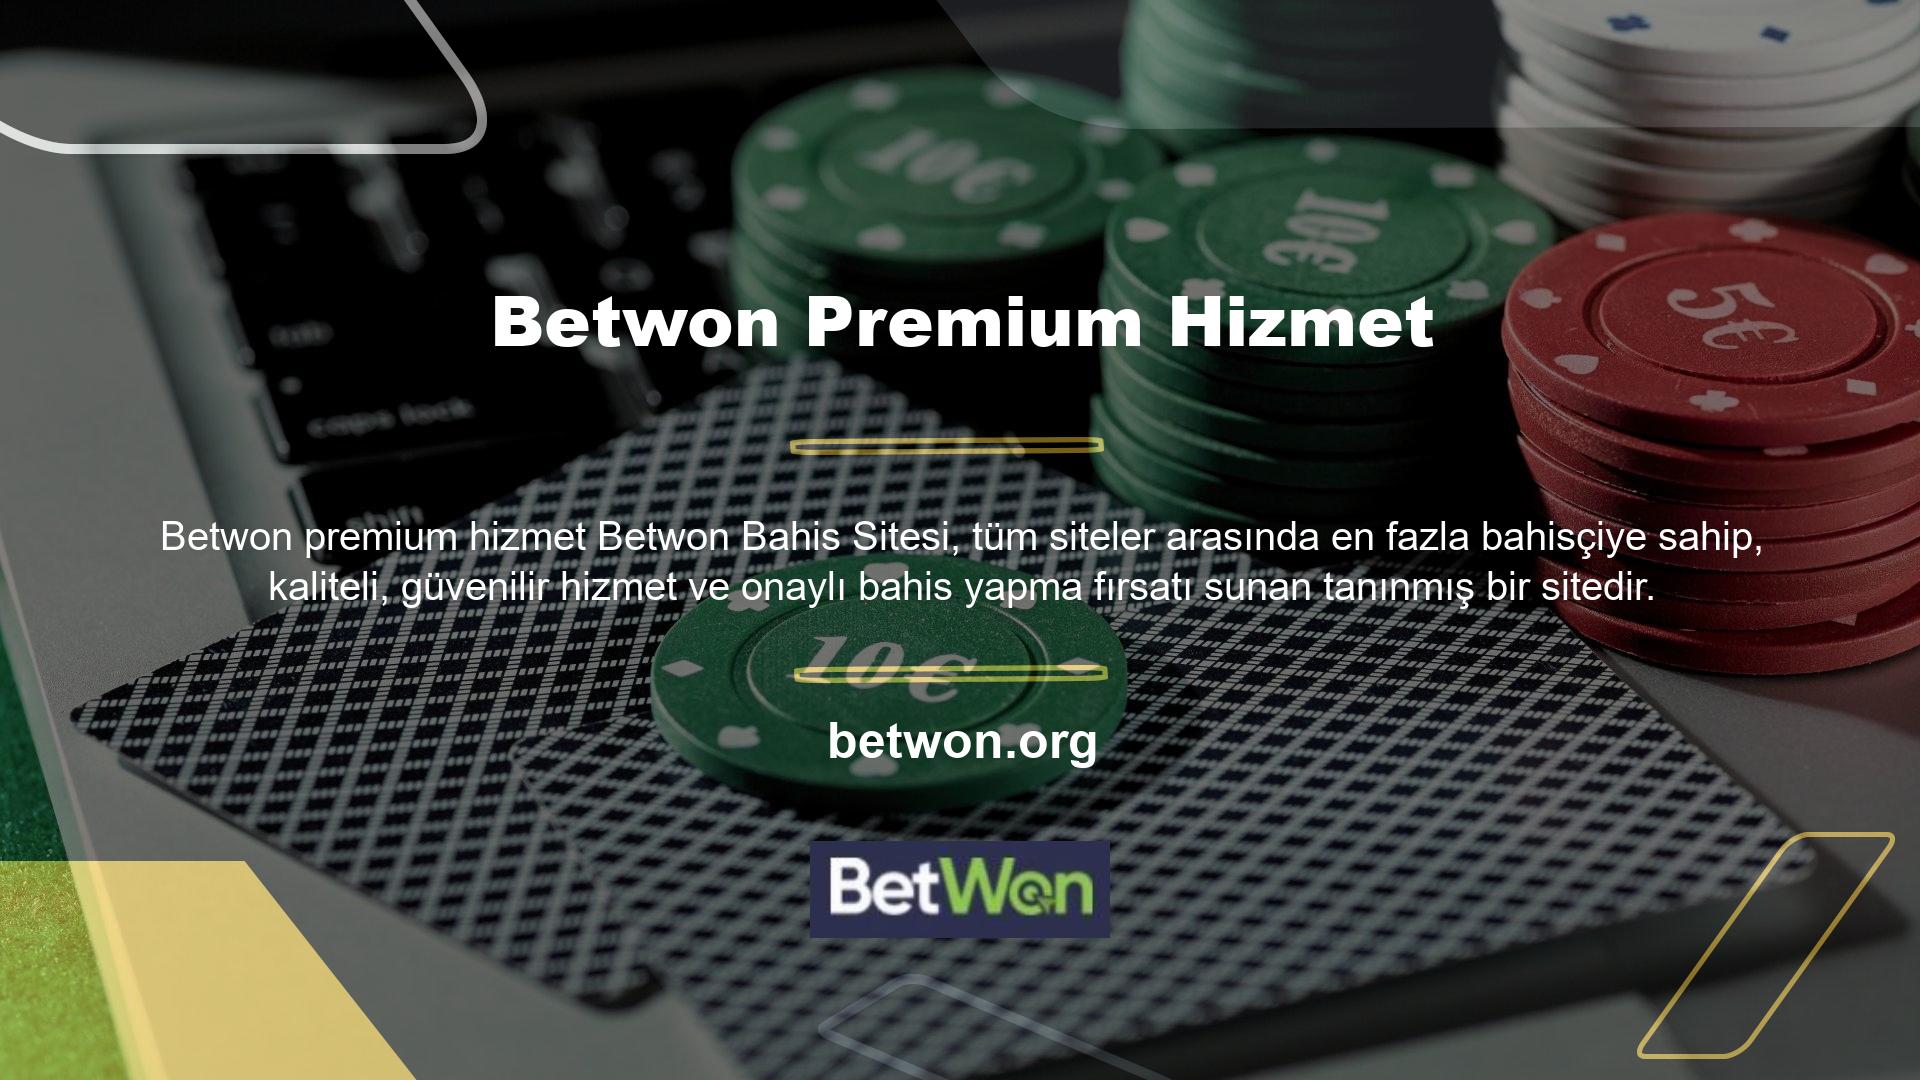 Ayrıca bahis meraklıları arasında popüler olan en popüler casino oyun ortamı ve bahis sitesi Betwon, birinci sınıf hizmet, yerel müşteri hizmetleri ve Türk pokeri oynama fırsatı sunuyor